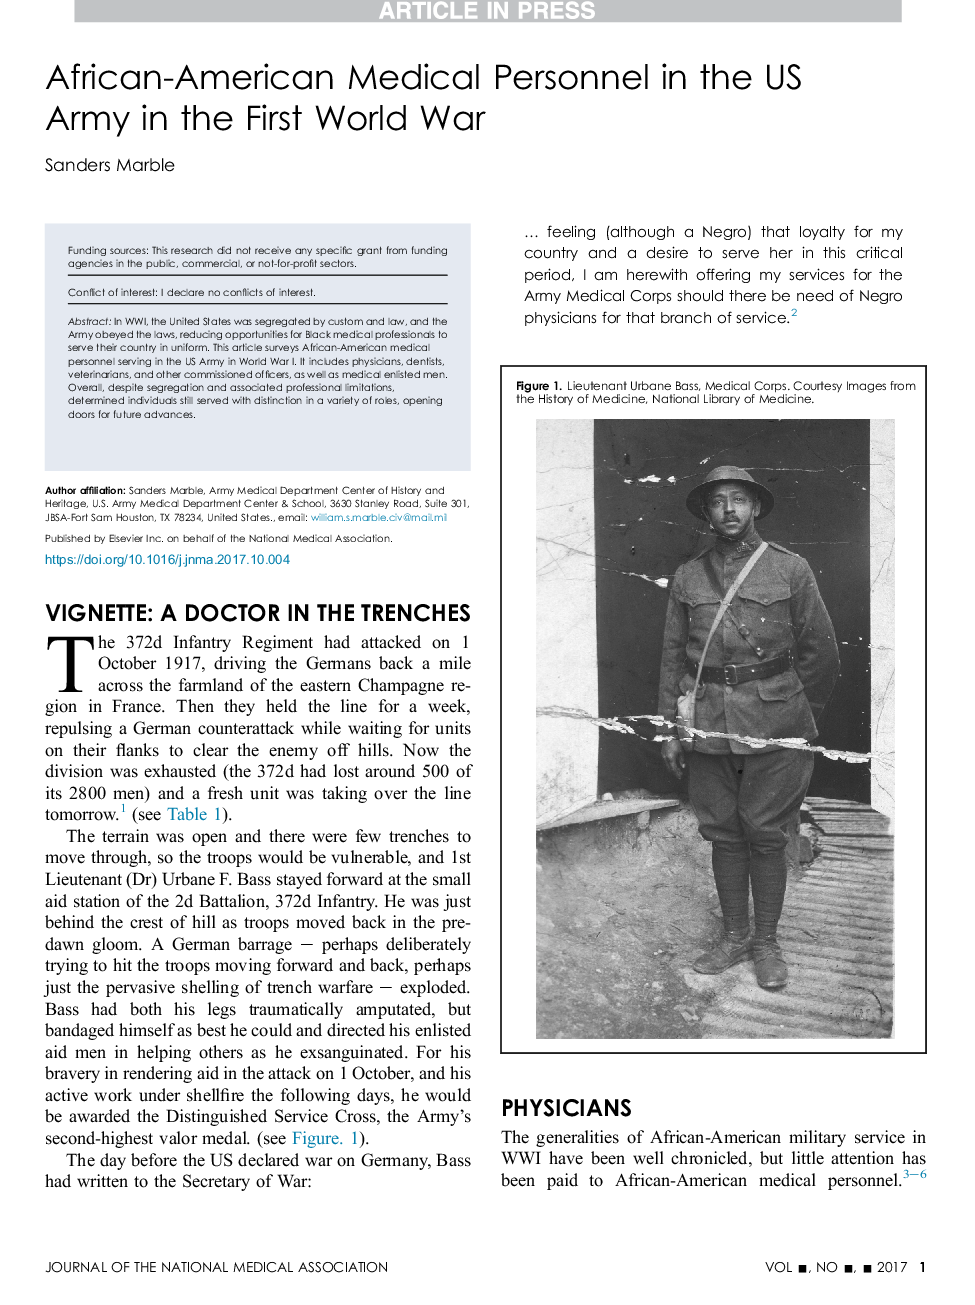 پرسنل پزشکی آفریقایی-آمریکایی در ارتش ایالات متحده در جنگ جهانی اول 